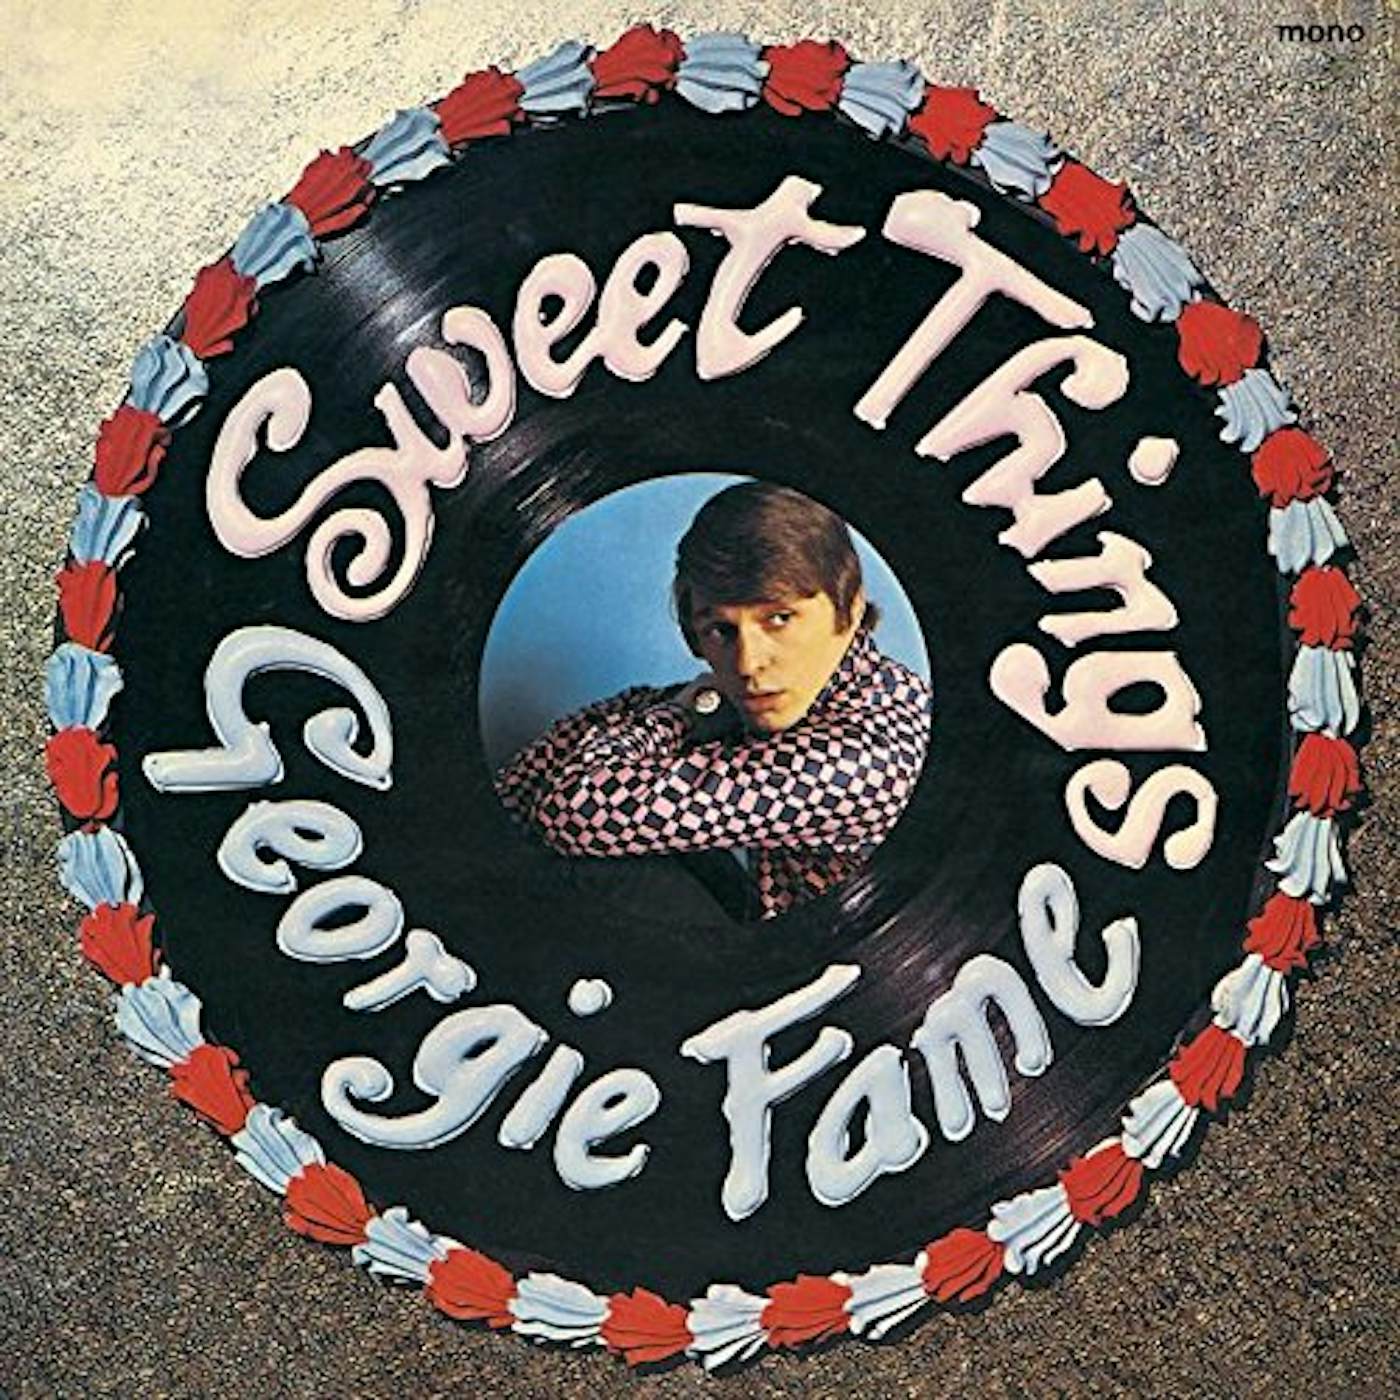 Georgie Fame SWEET THING CD